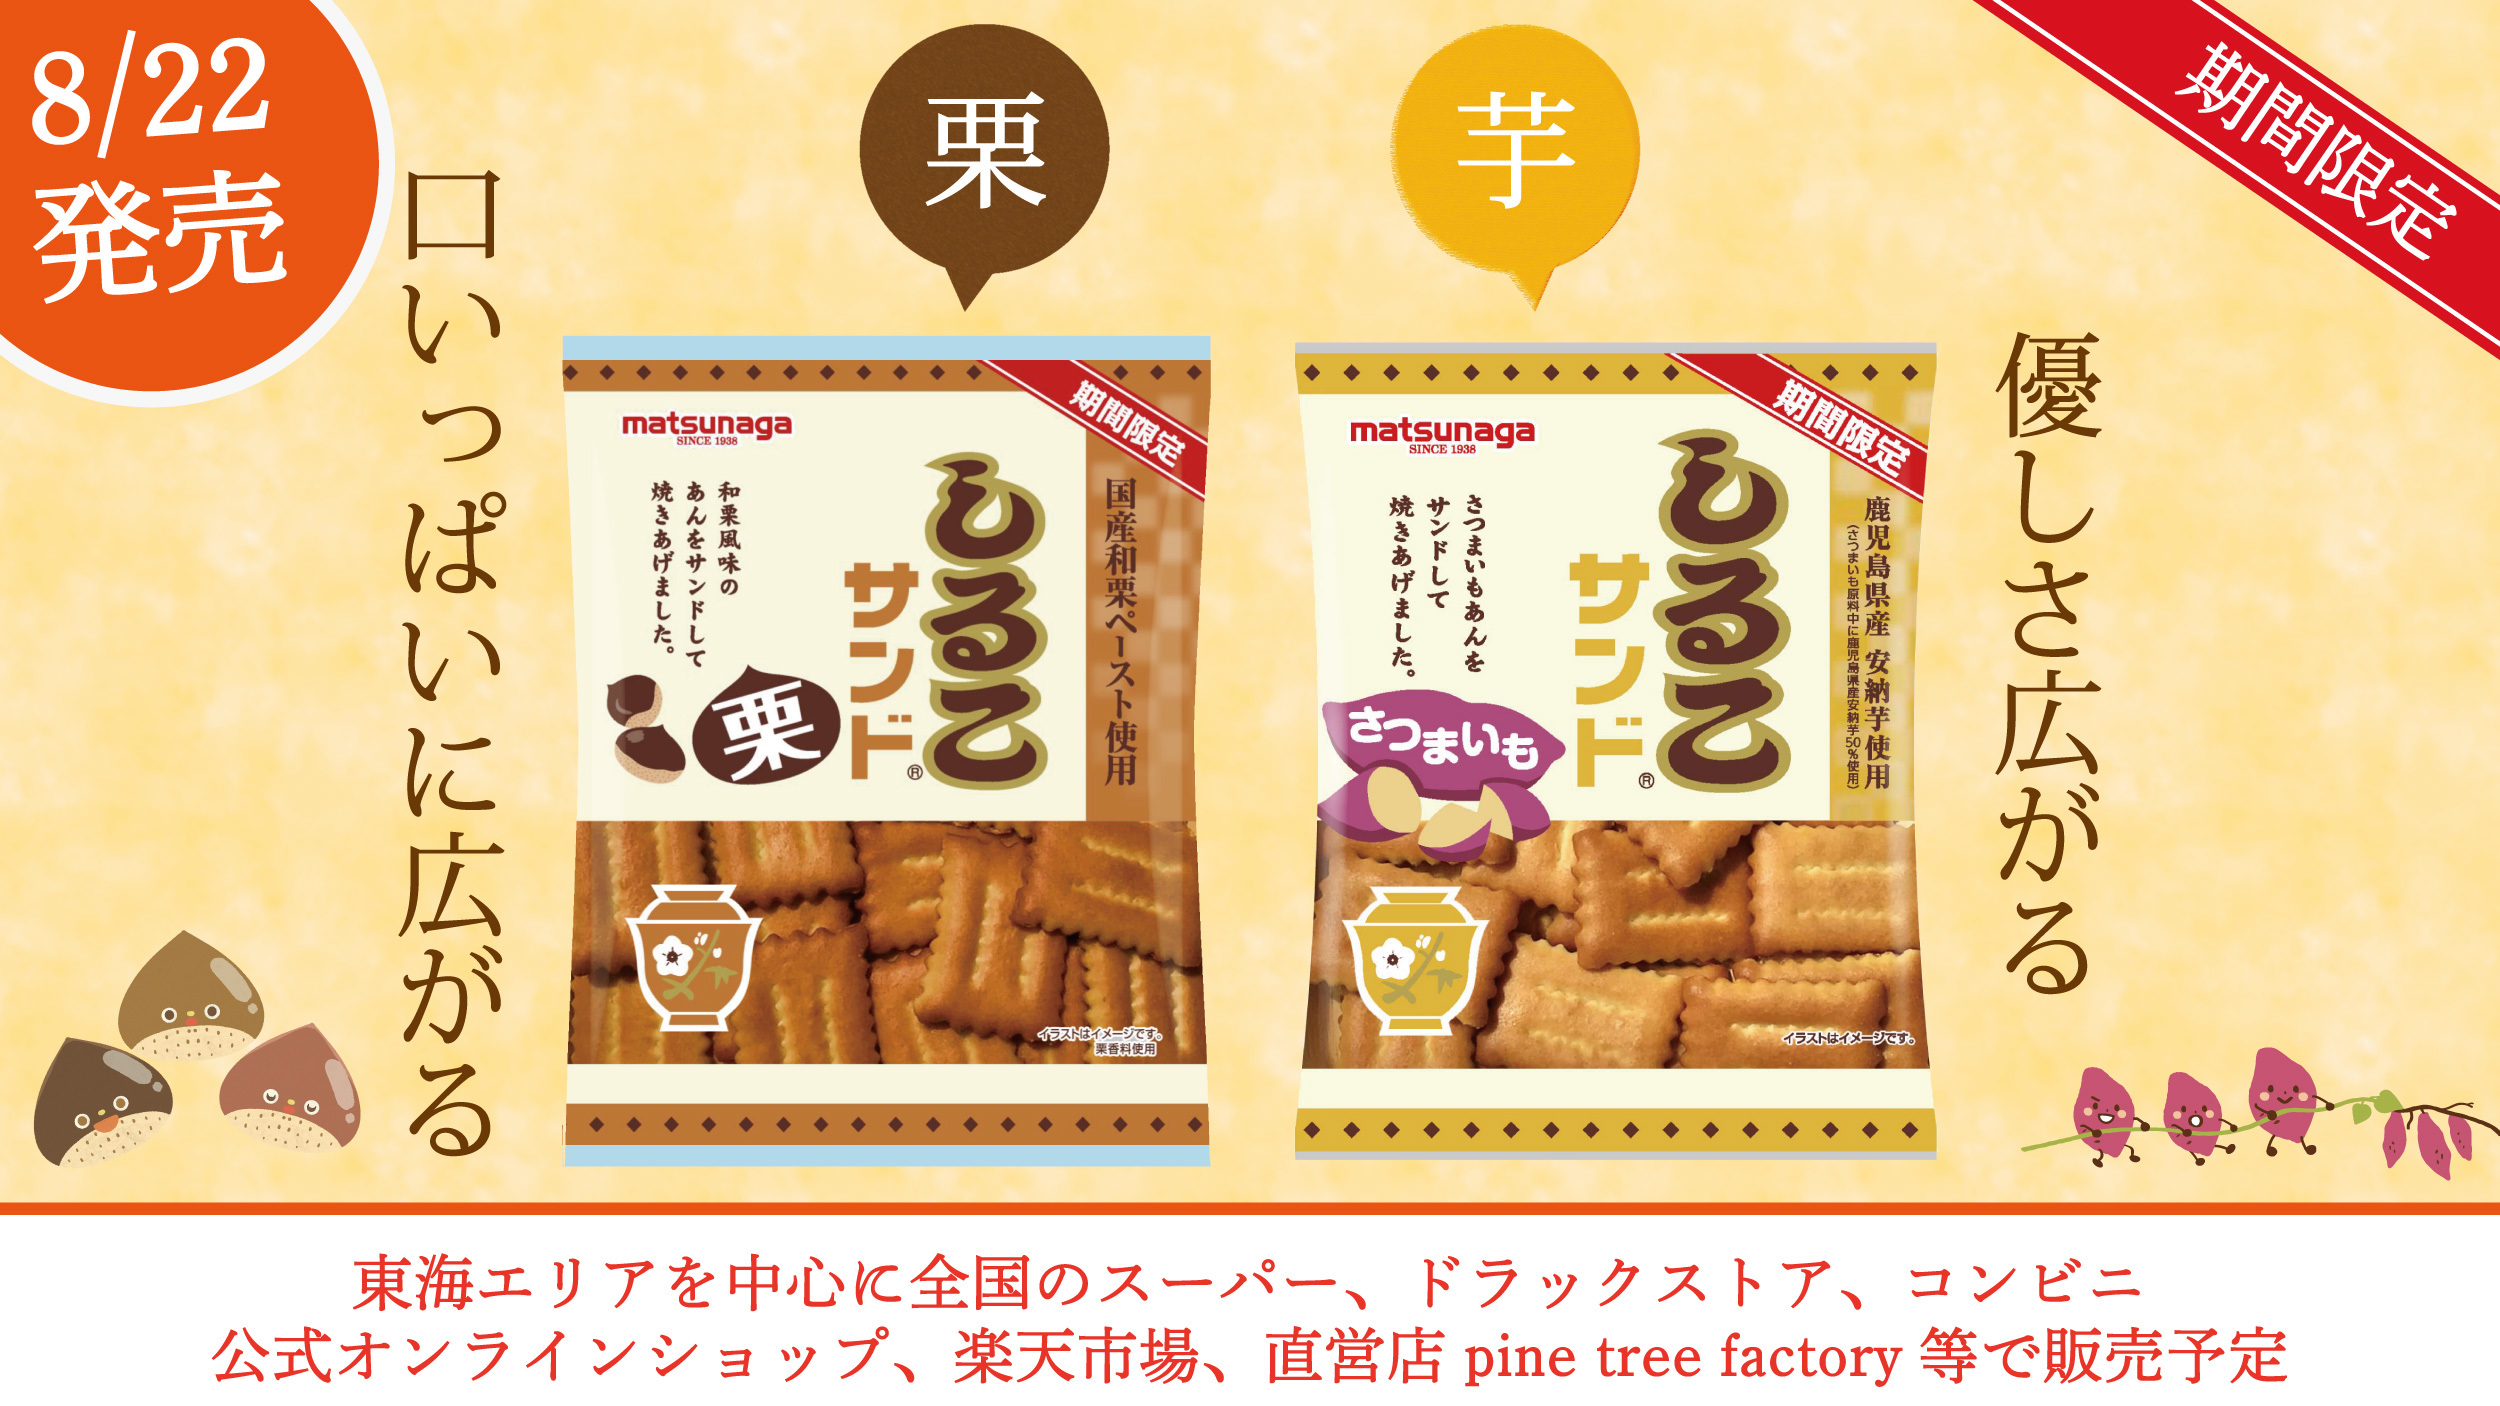 九州厳選素材「PASTATAI高千穂バター和風ベーコン」を
2022年9月1日に新発売